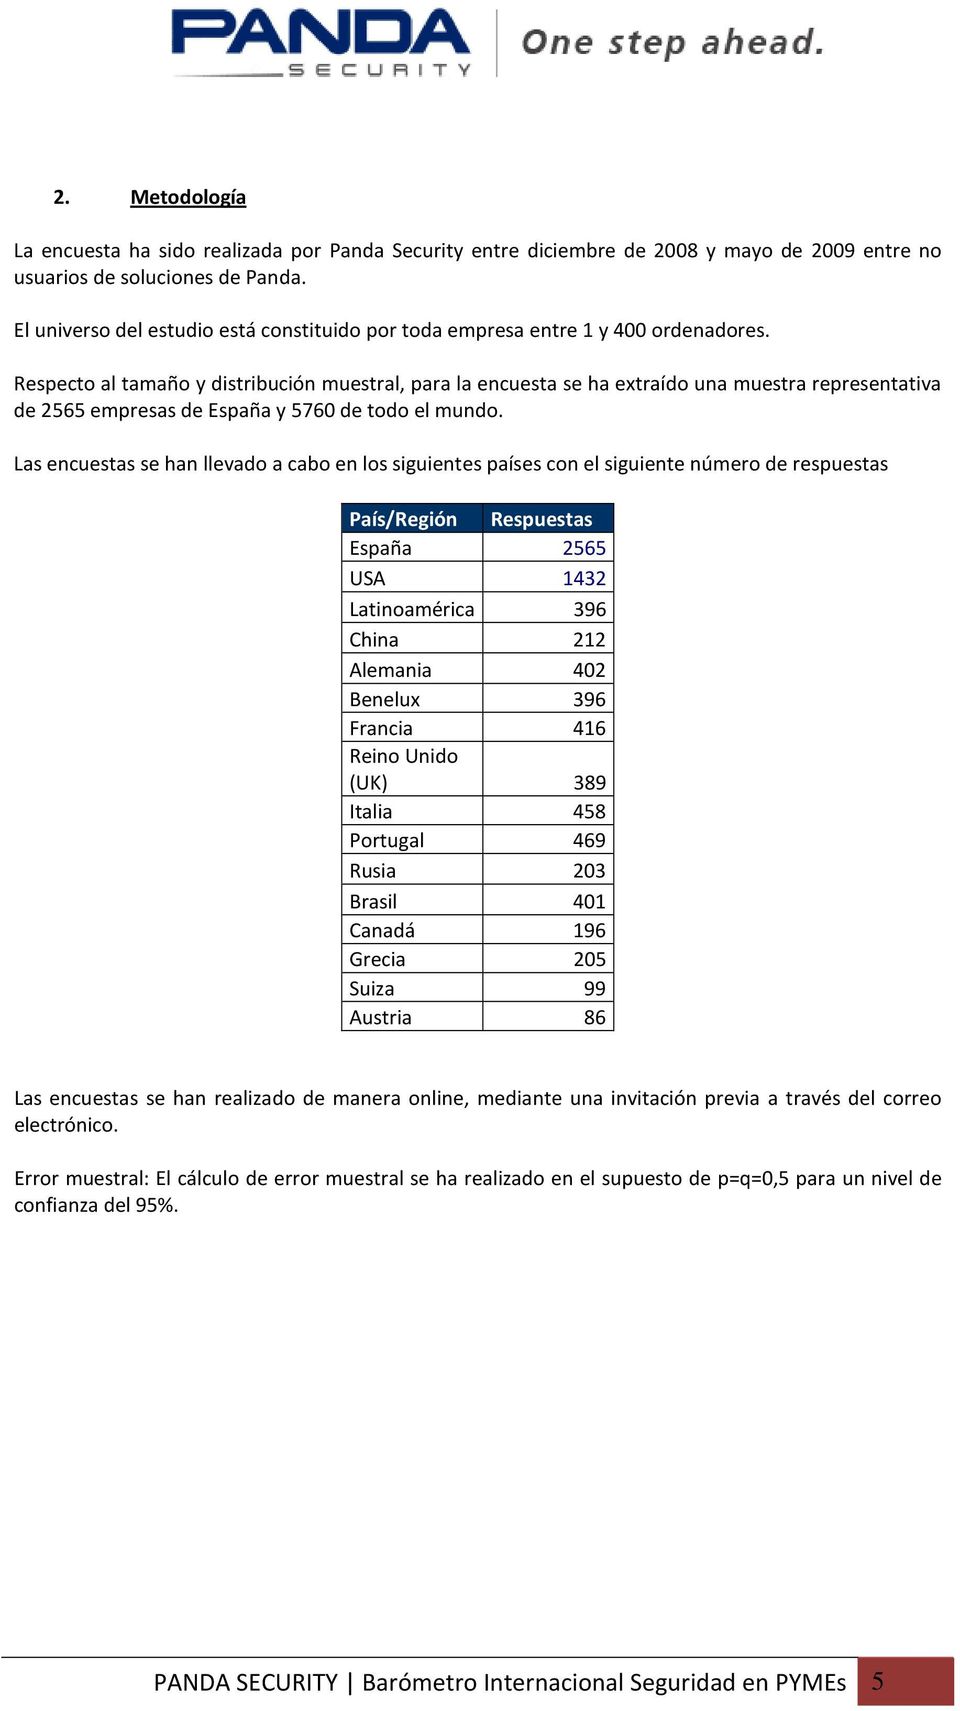 Respecto al tamaño y distribución muestral, para la encuesta se ha extraído una muestra representativa de 2565 empresas de España y 5760 de todo el mundo.